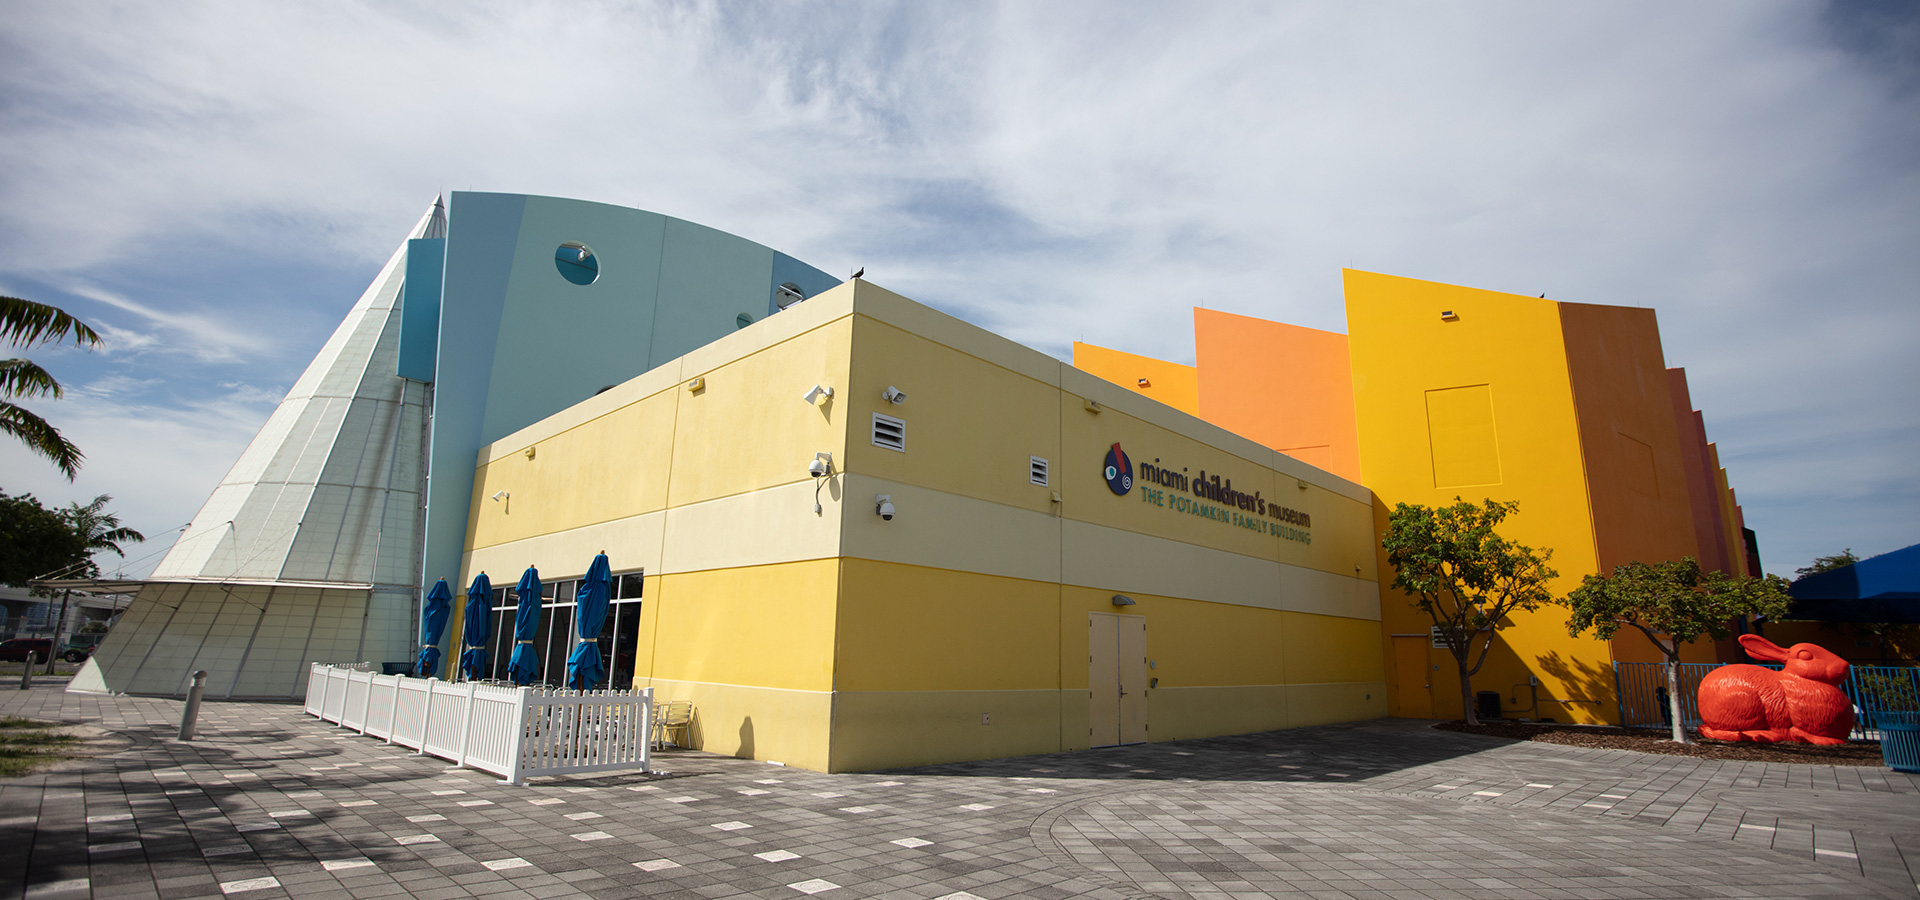 Miami Children's Museum Façade